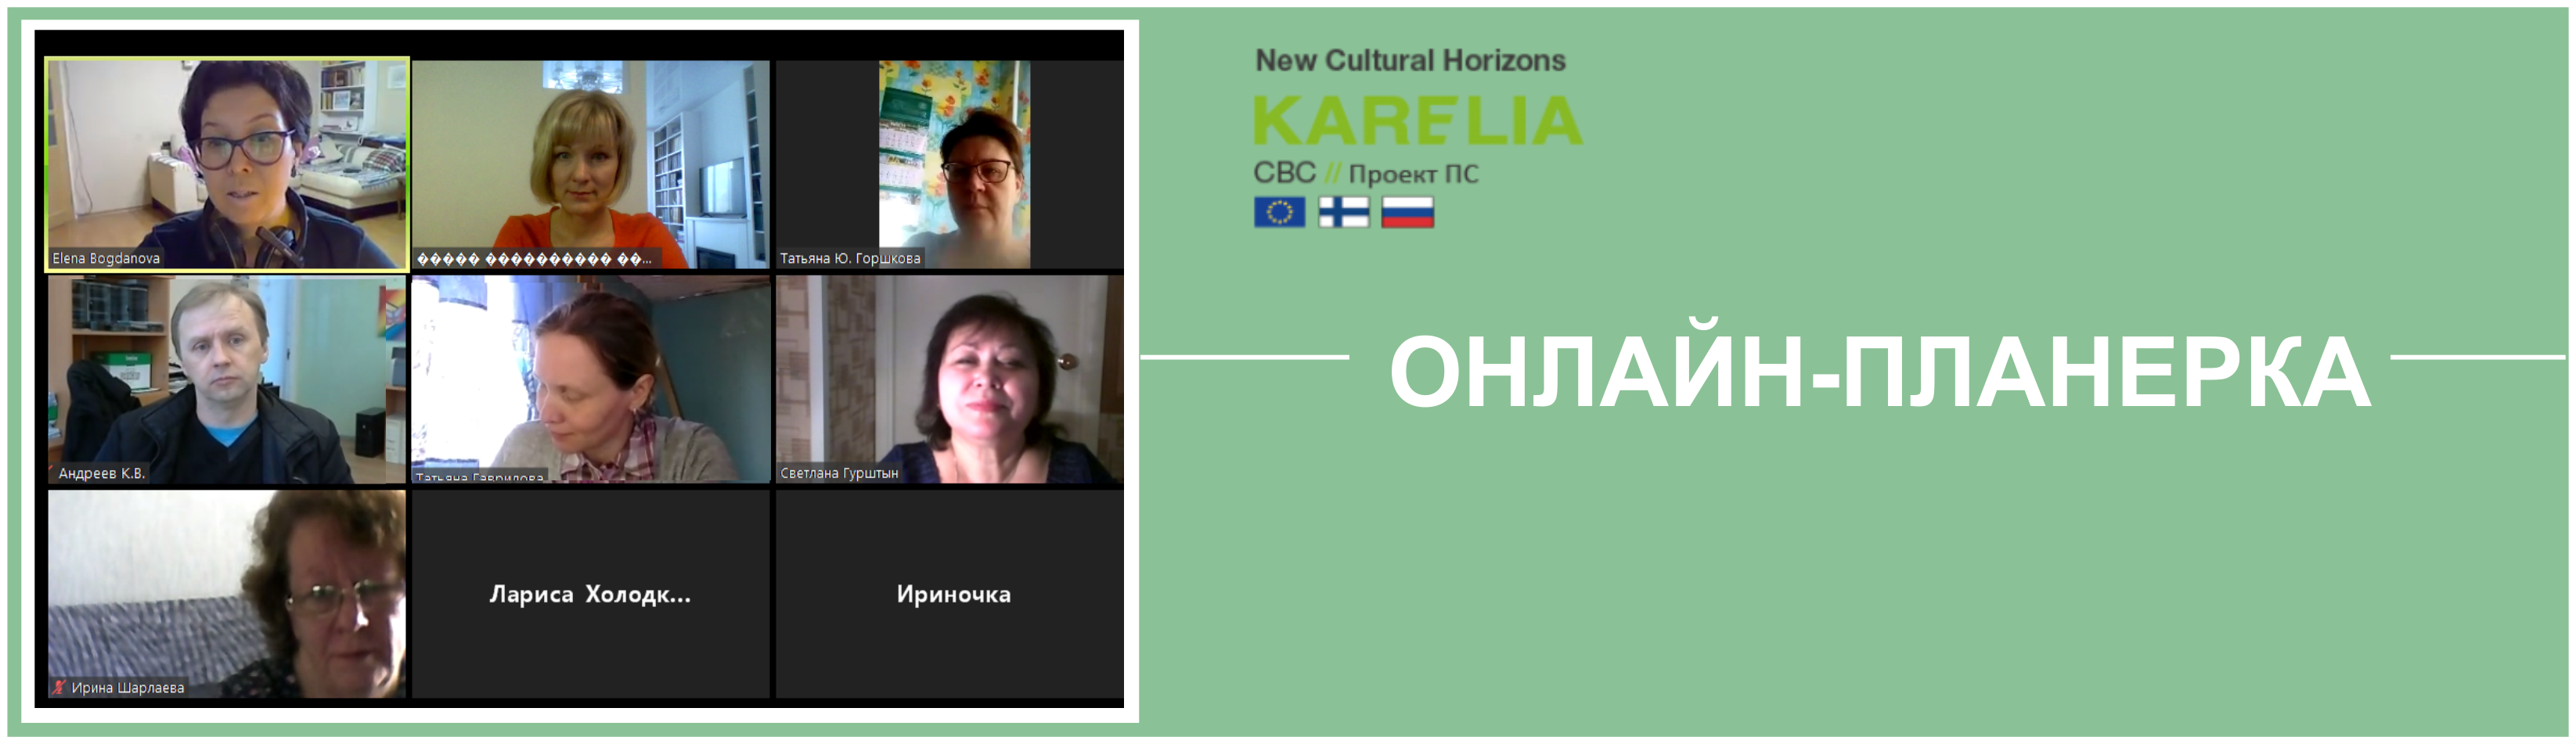 «Новые горизонты культуры»: онлайн – совещание проектной группы